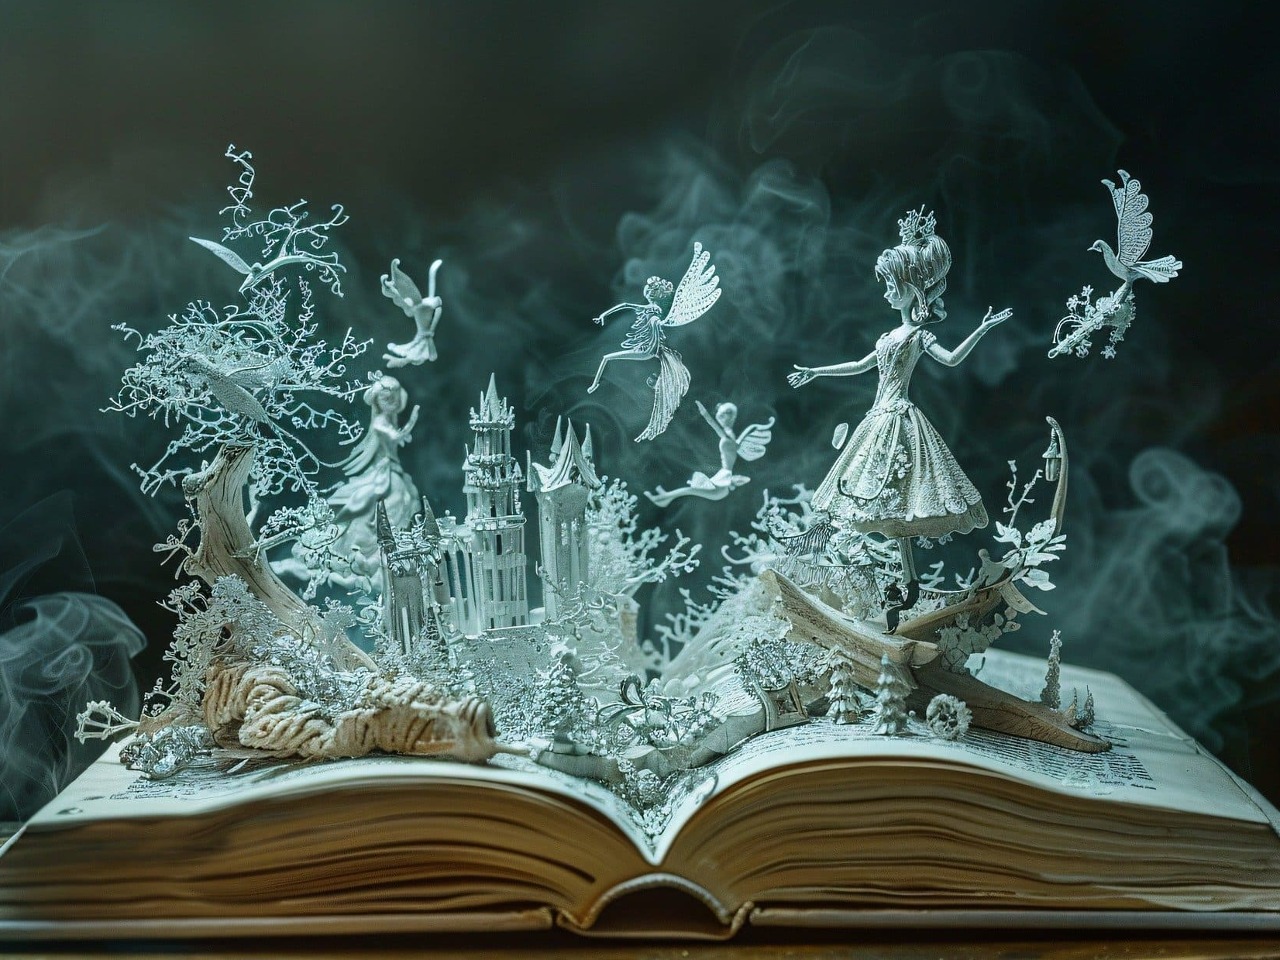 Décor en papier représentant un univers de conte de fées et sortant d'un livre ouvert.